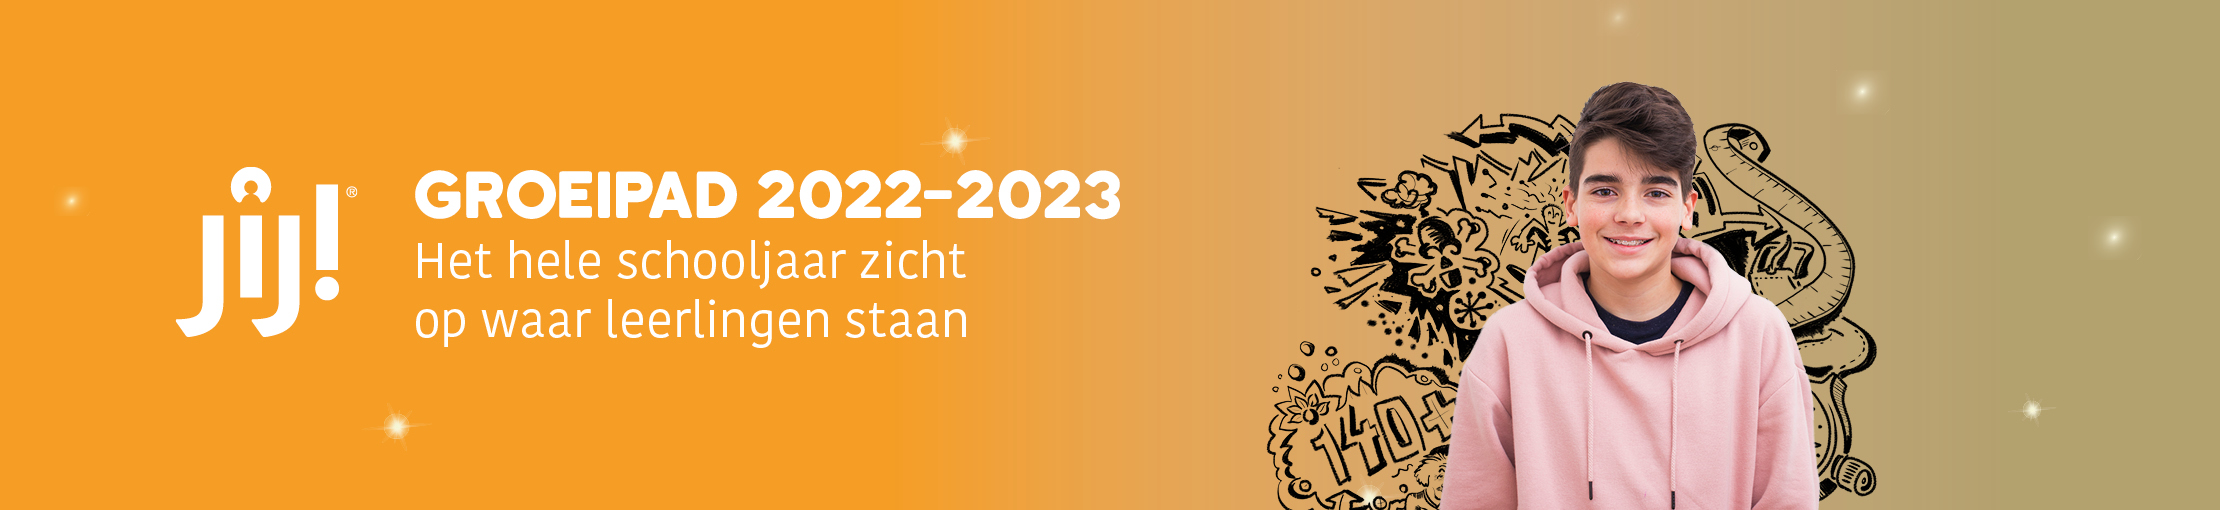 Groeipad 2022-2023 voortgezet onderwijs